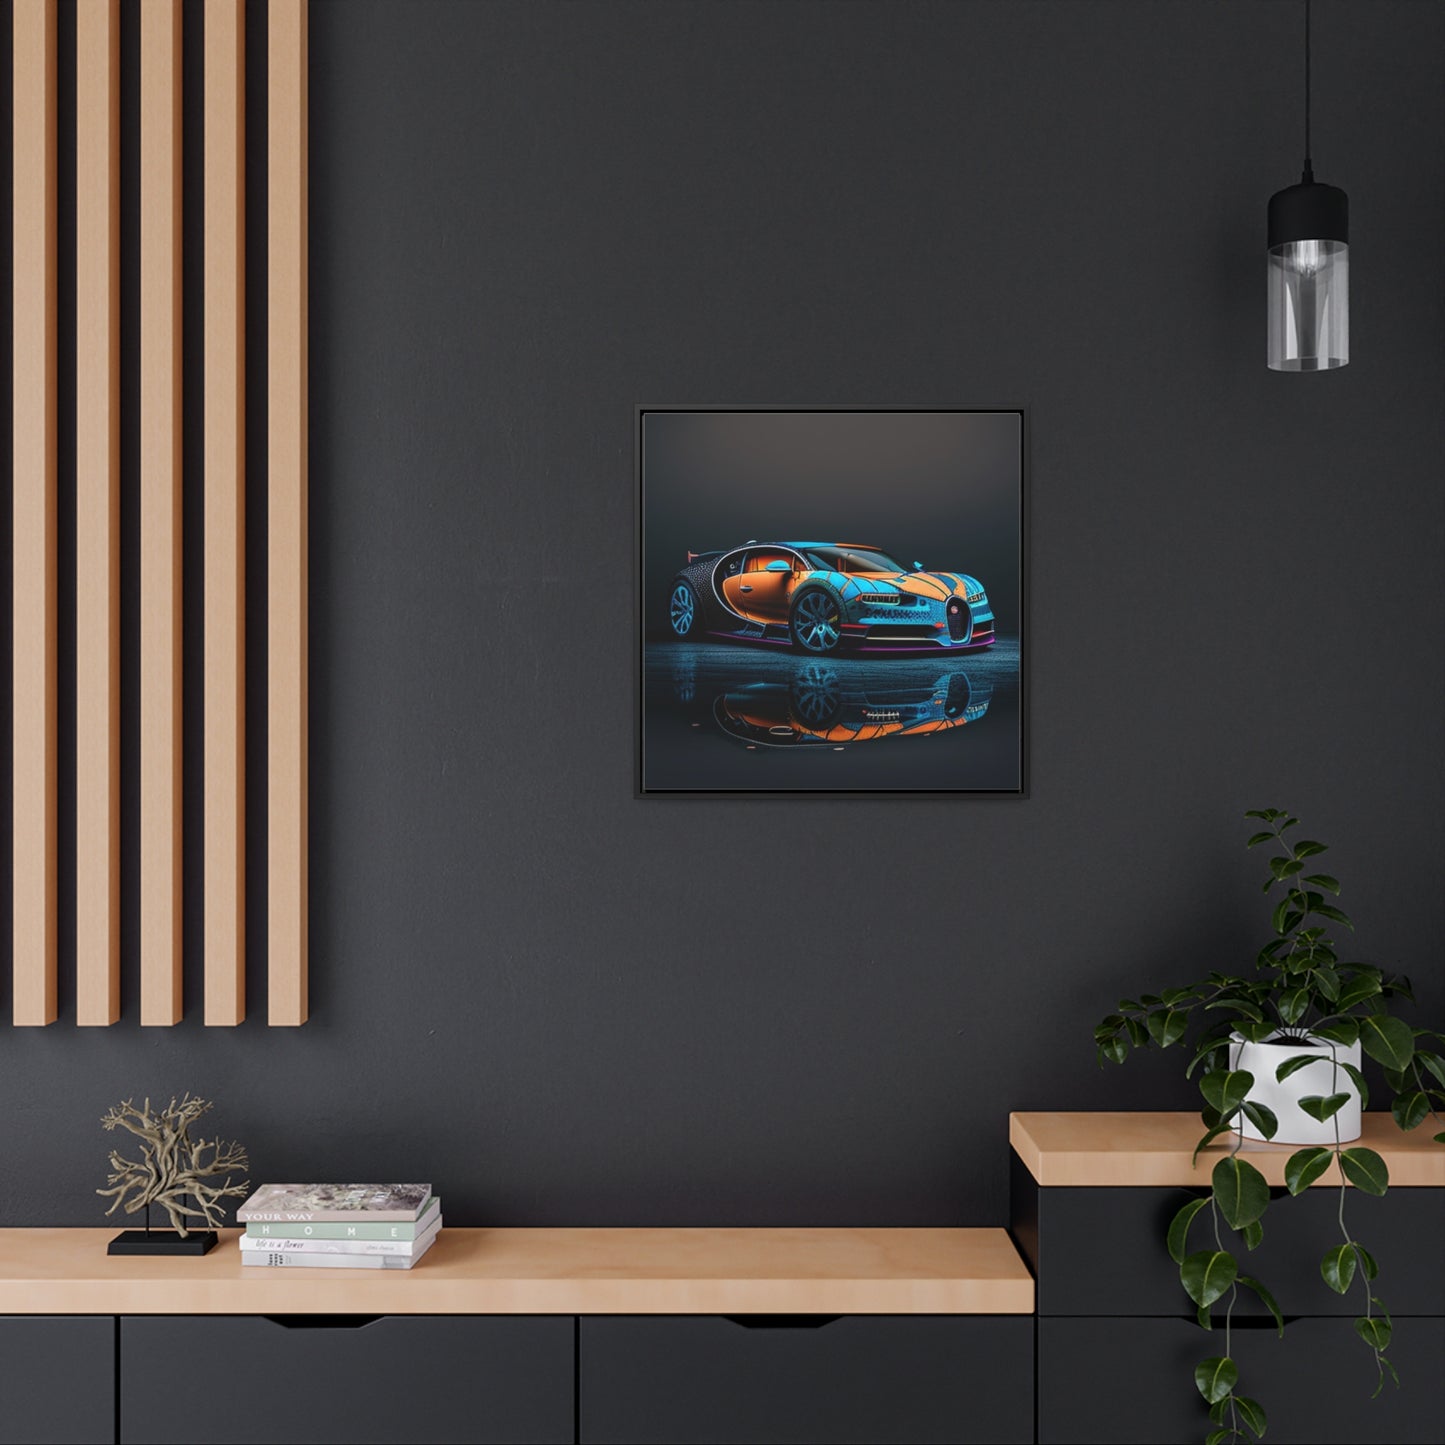 Gallery Canvas Wraps, Square Frame Bugatti Blue 1